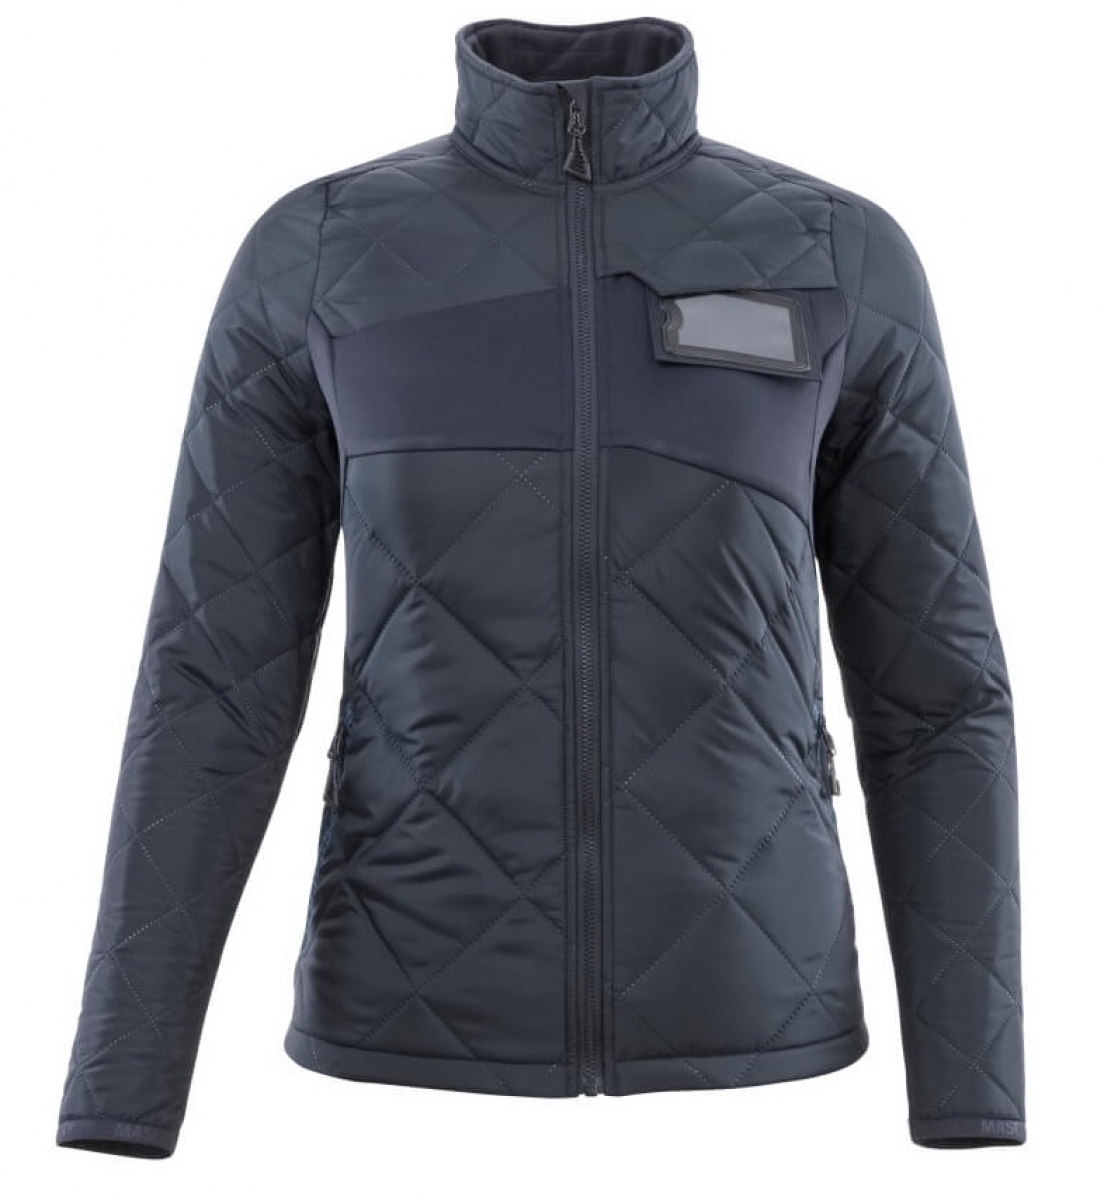 MASCOT-Workwear, Klteschutz, Damen Winterjacke, 260 g/m, schwarzblau